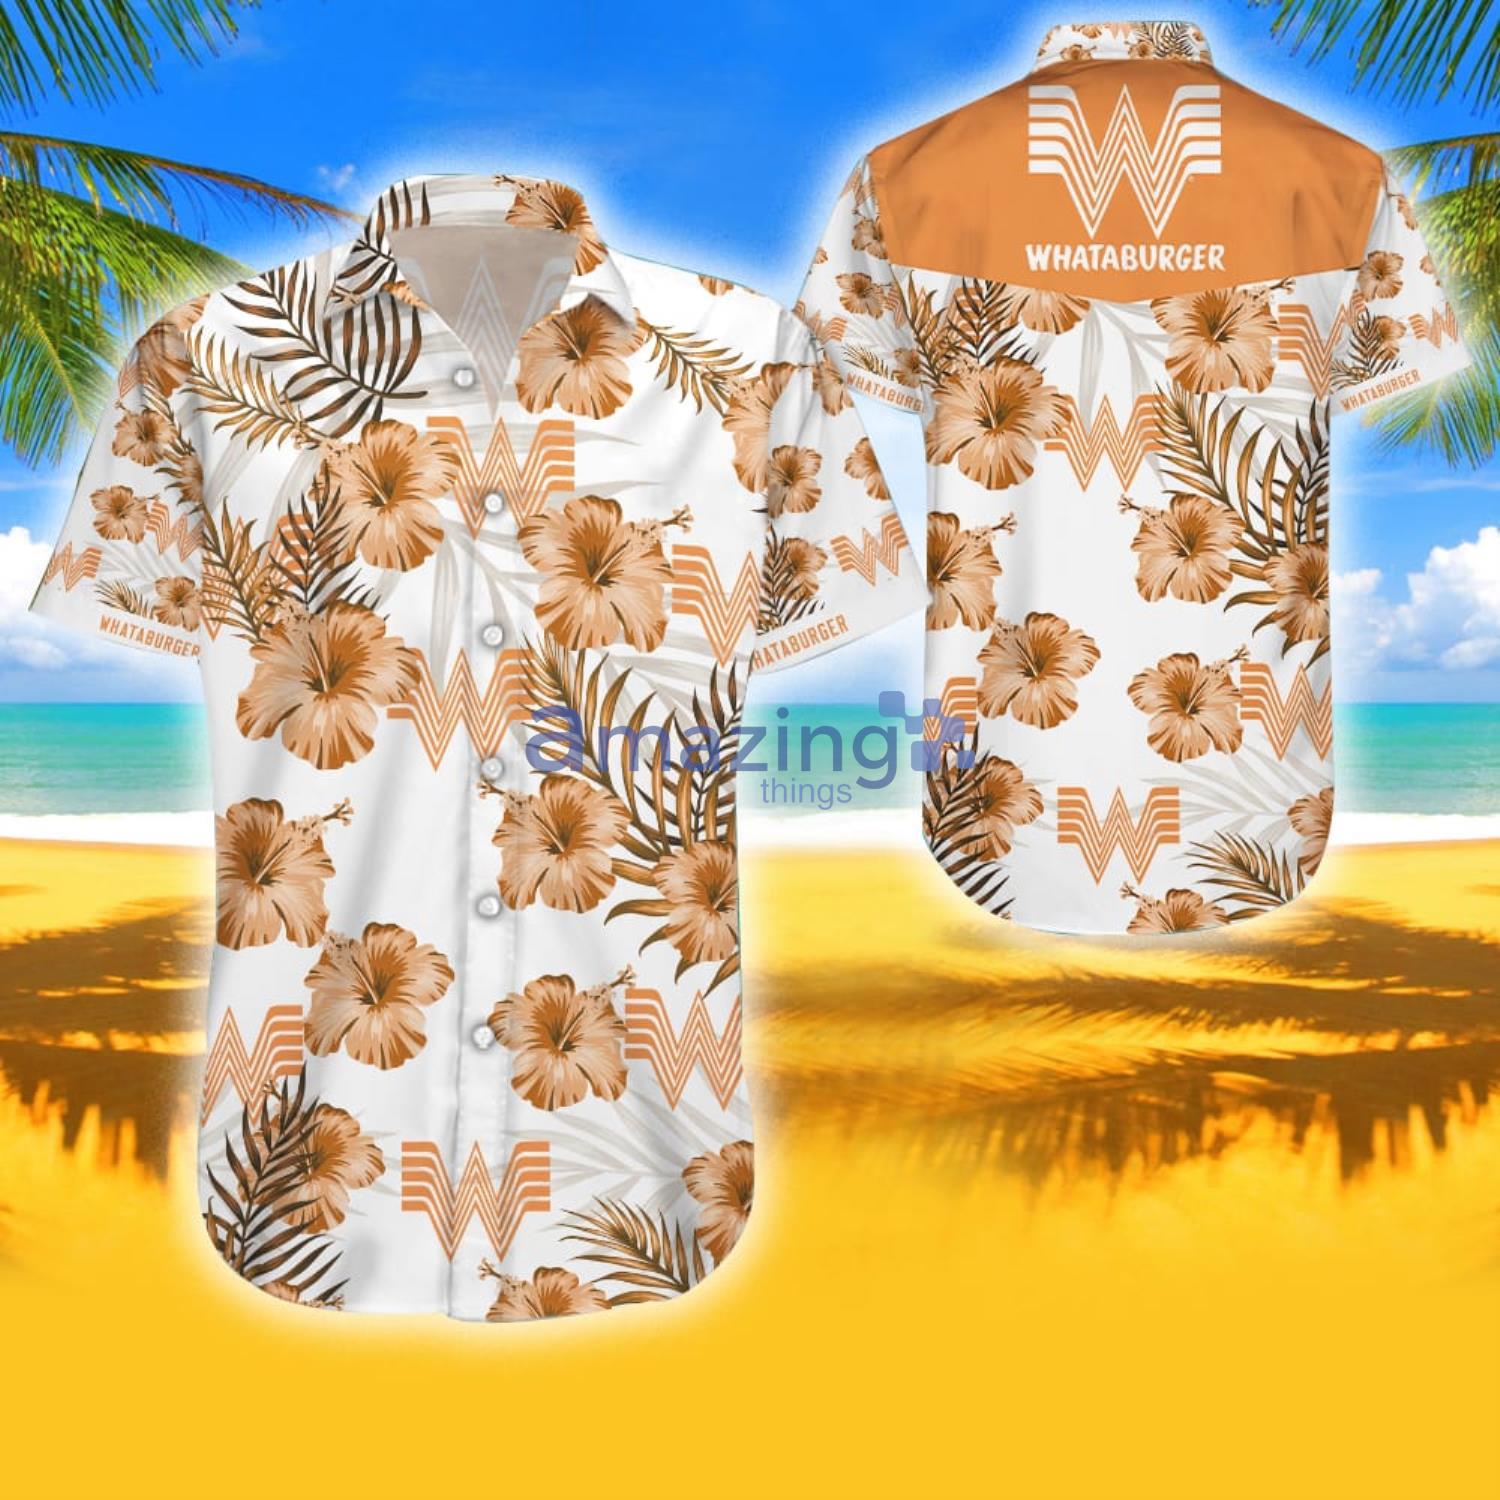 Whataburger Hawaiian Shirts Whataburger Shorts Whataburger 